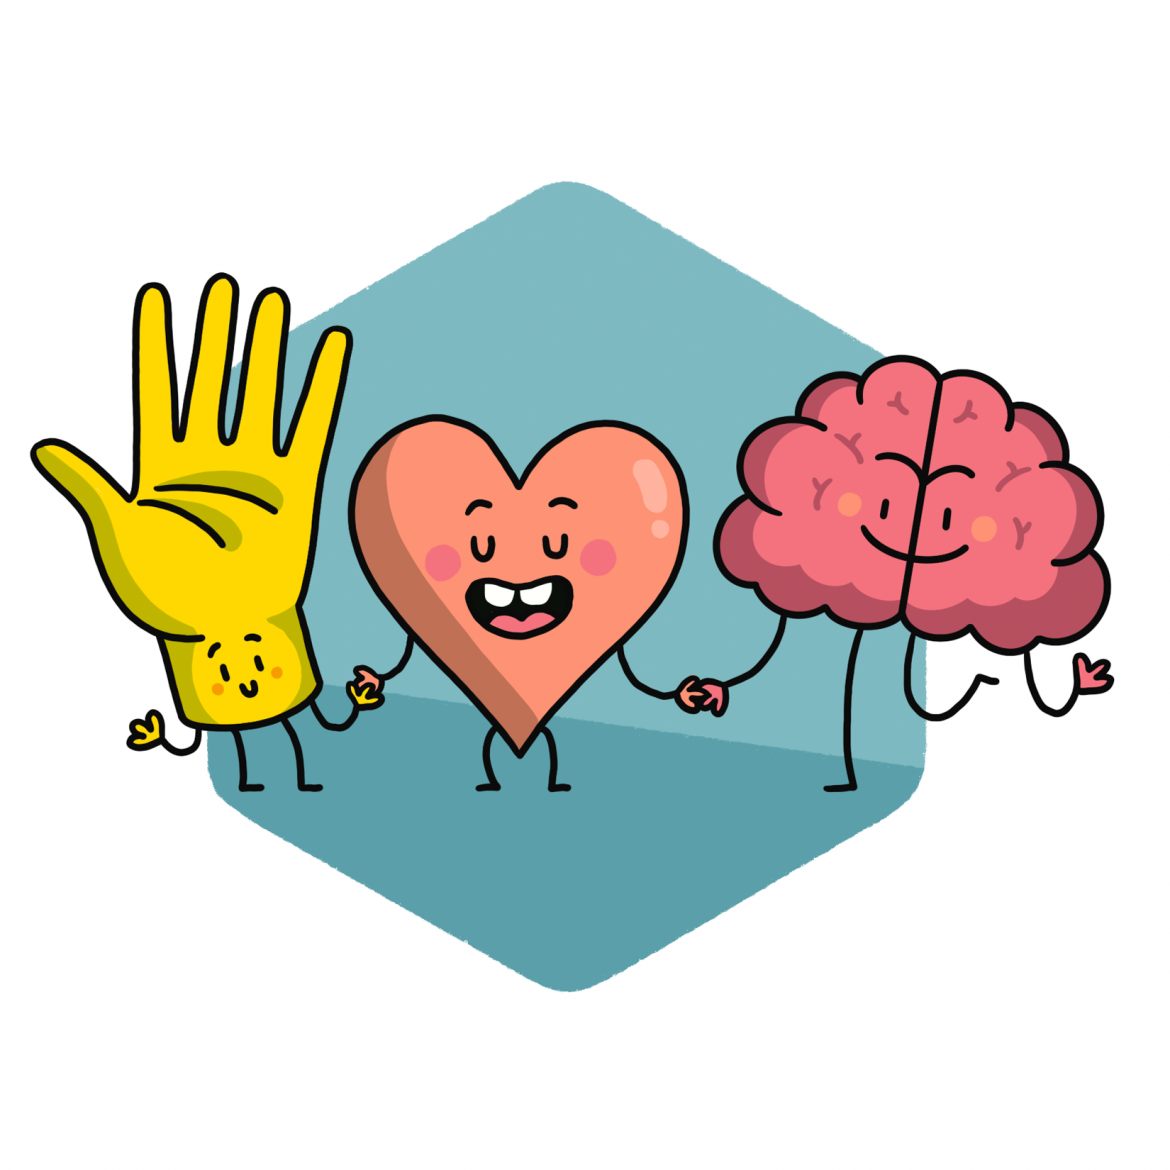 Eine Hand, ein Herz und ein Gehirn – alle drei als lebendige Figuren dargstellt – stehen Hand in Hand nebeneinander. Titel: Ein starkes Team!